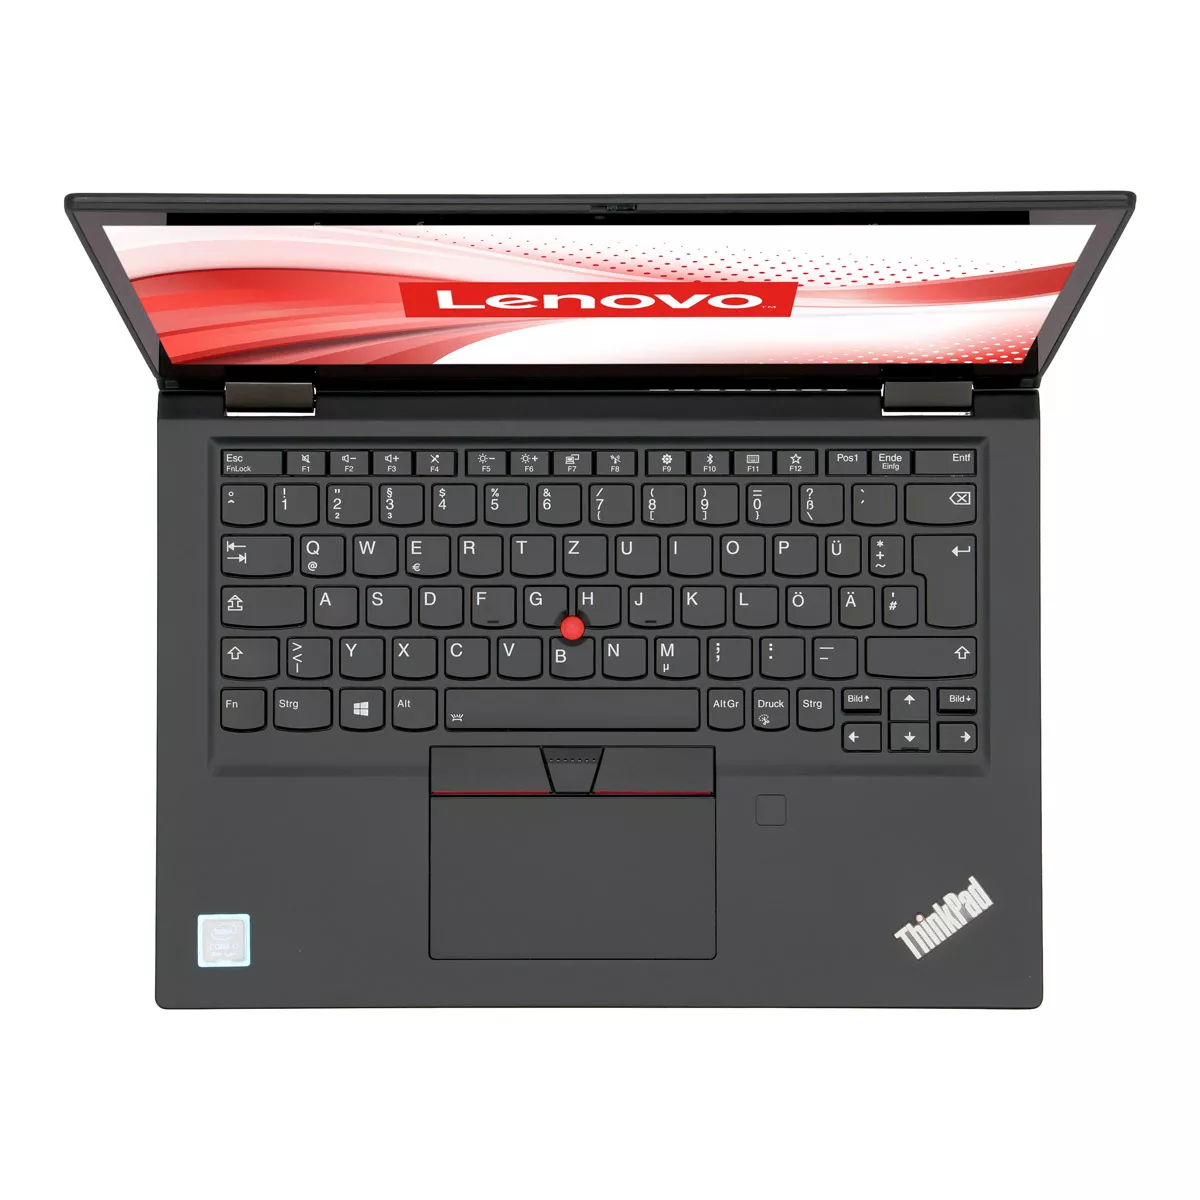 Lenovo ThinkPad X390 Yoga Core i5 8365U Touch 16 GB 500 GB M.2 nVME SSD Webcam B